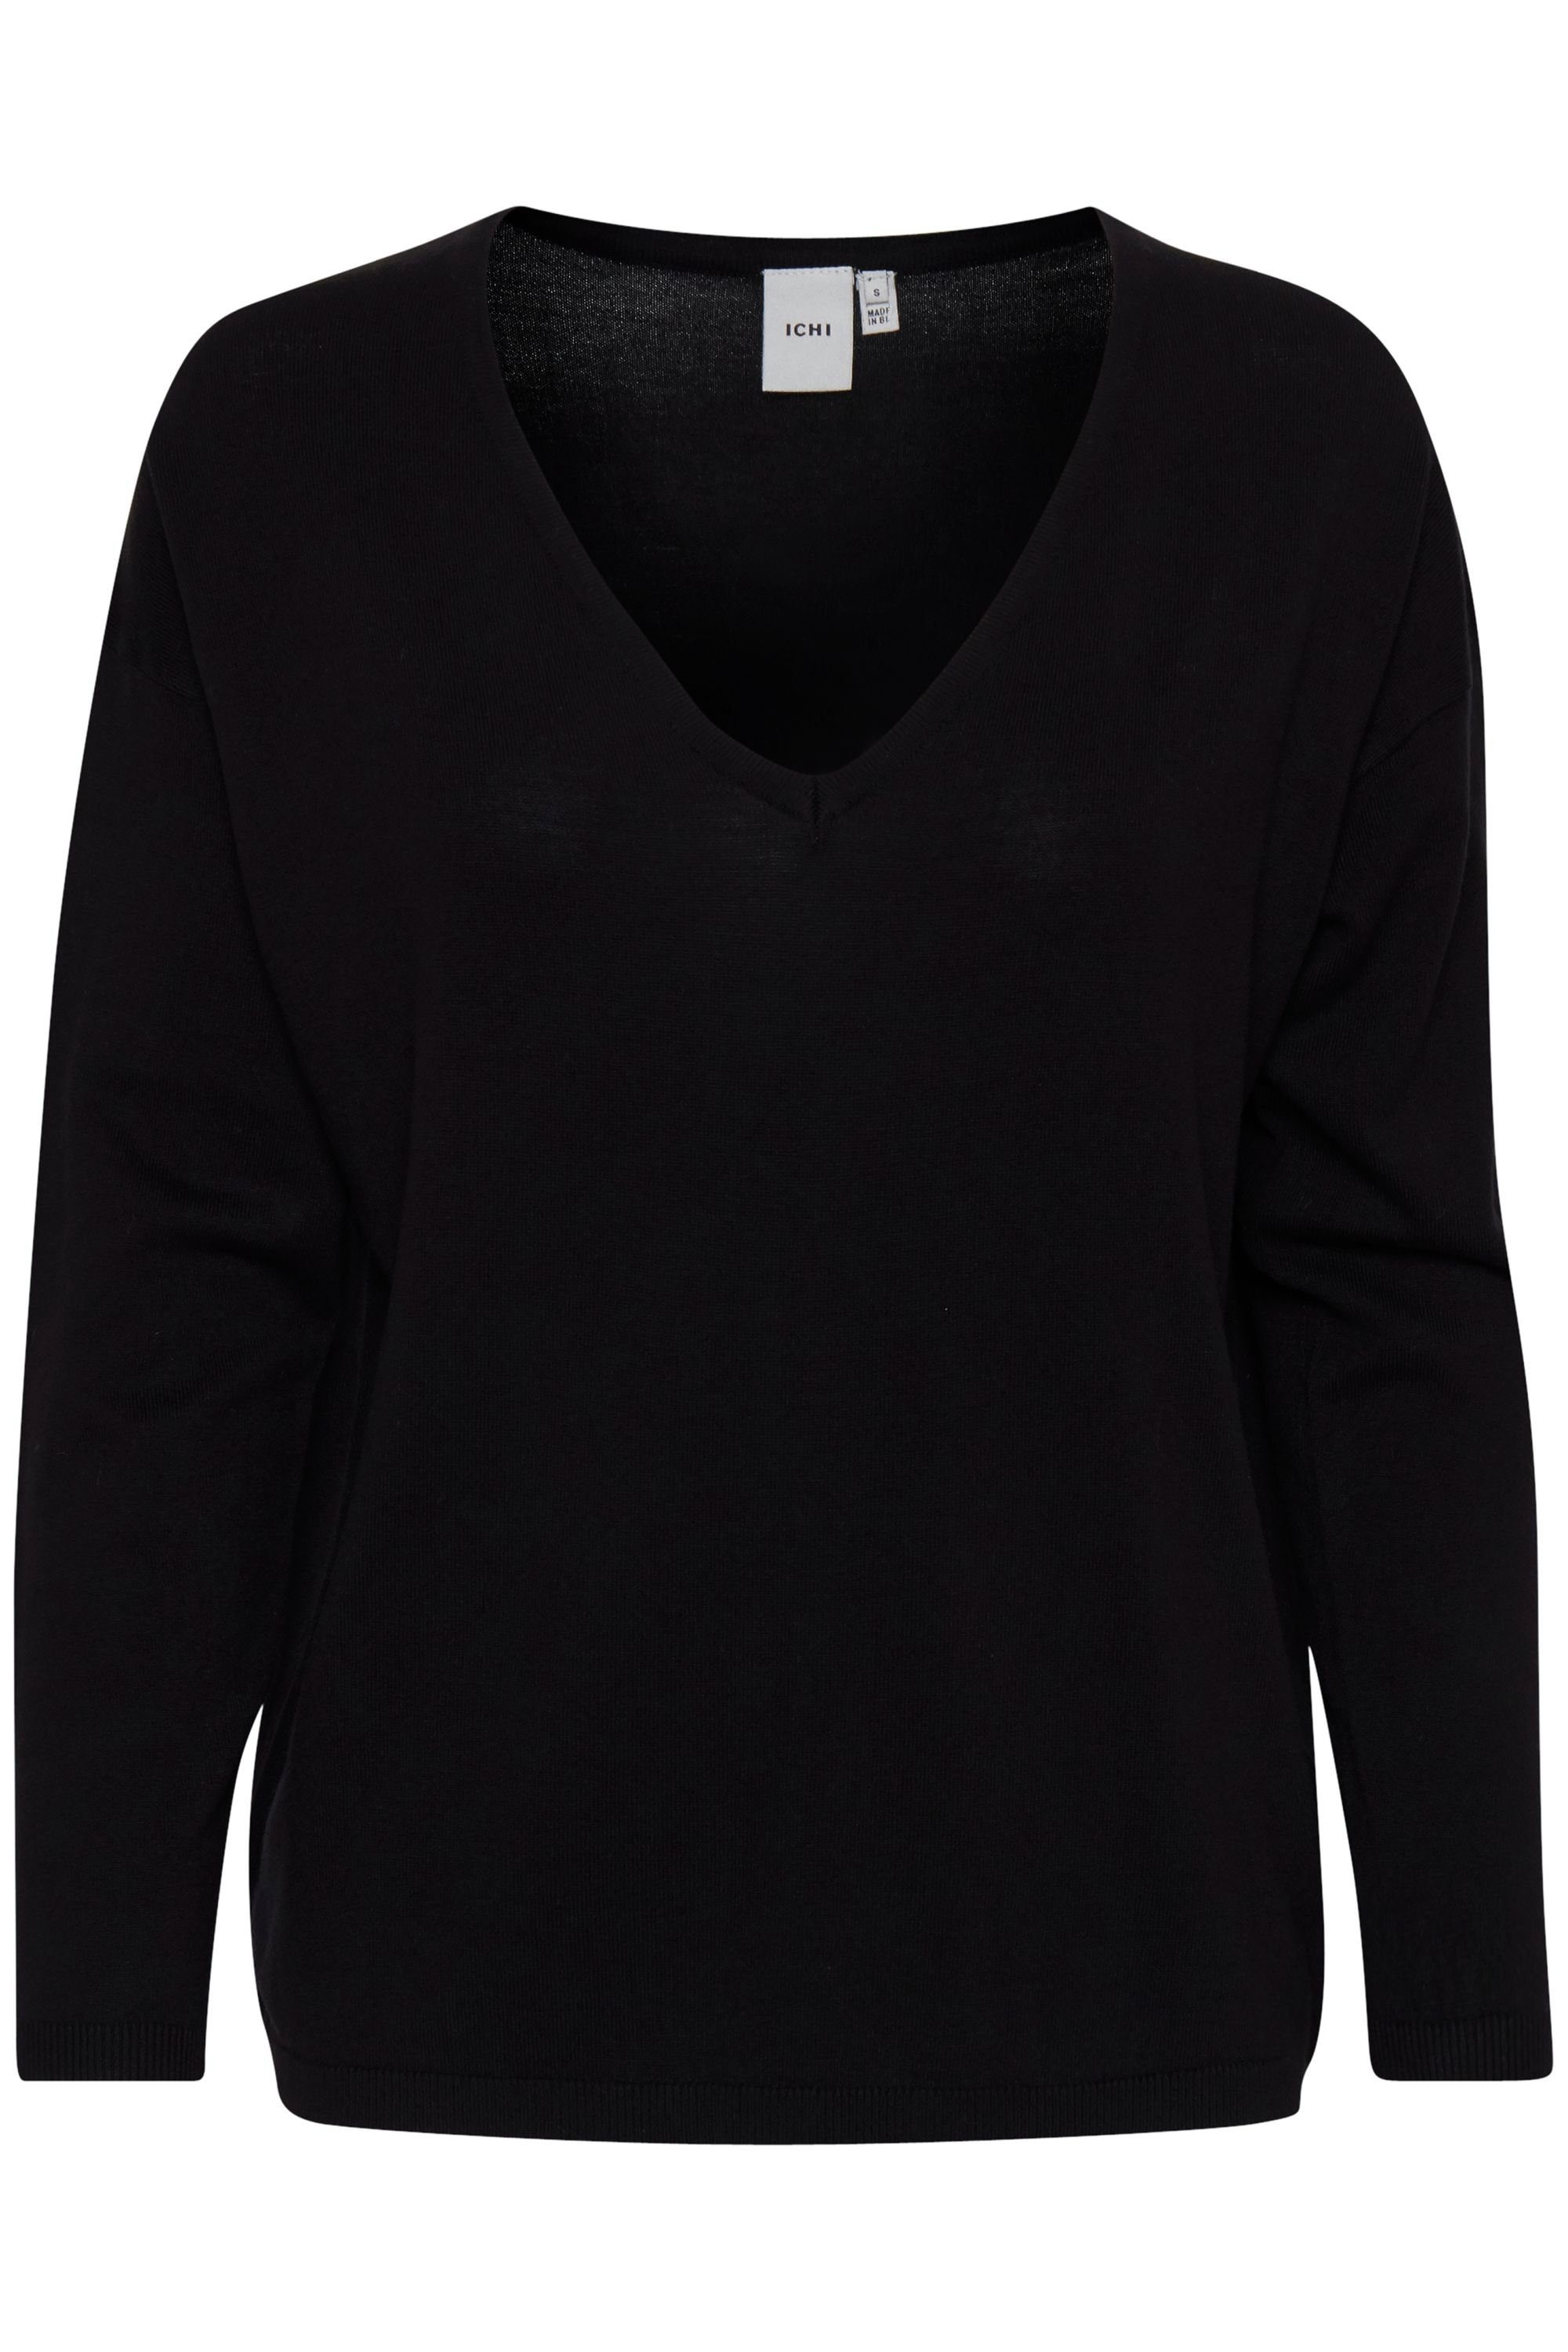 Ichi V-Ausschnitt-Pullover IHMAFA Black (10001) 20109092 LS2 - V